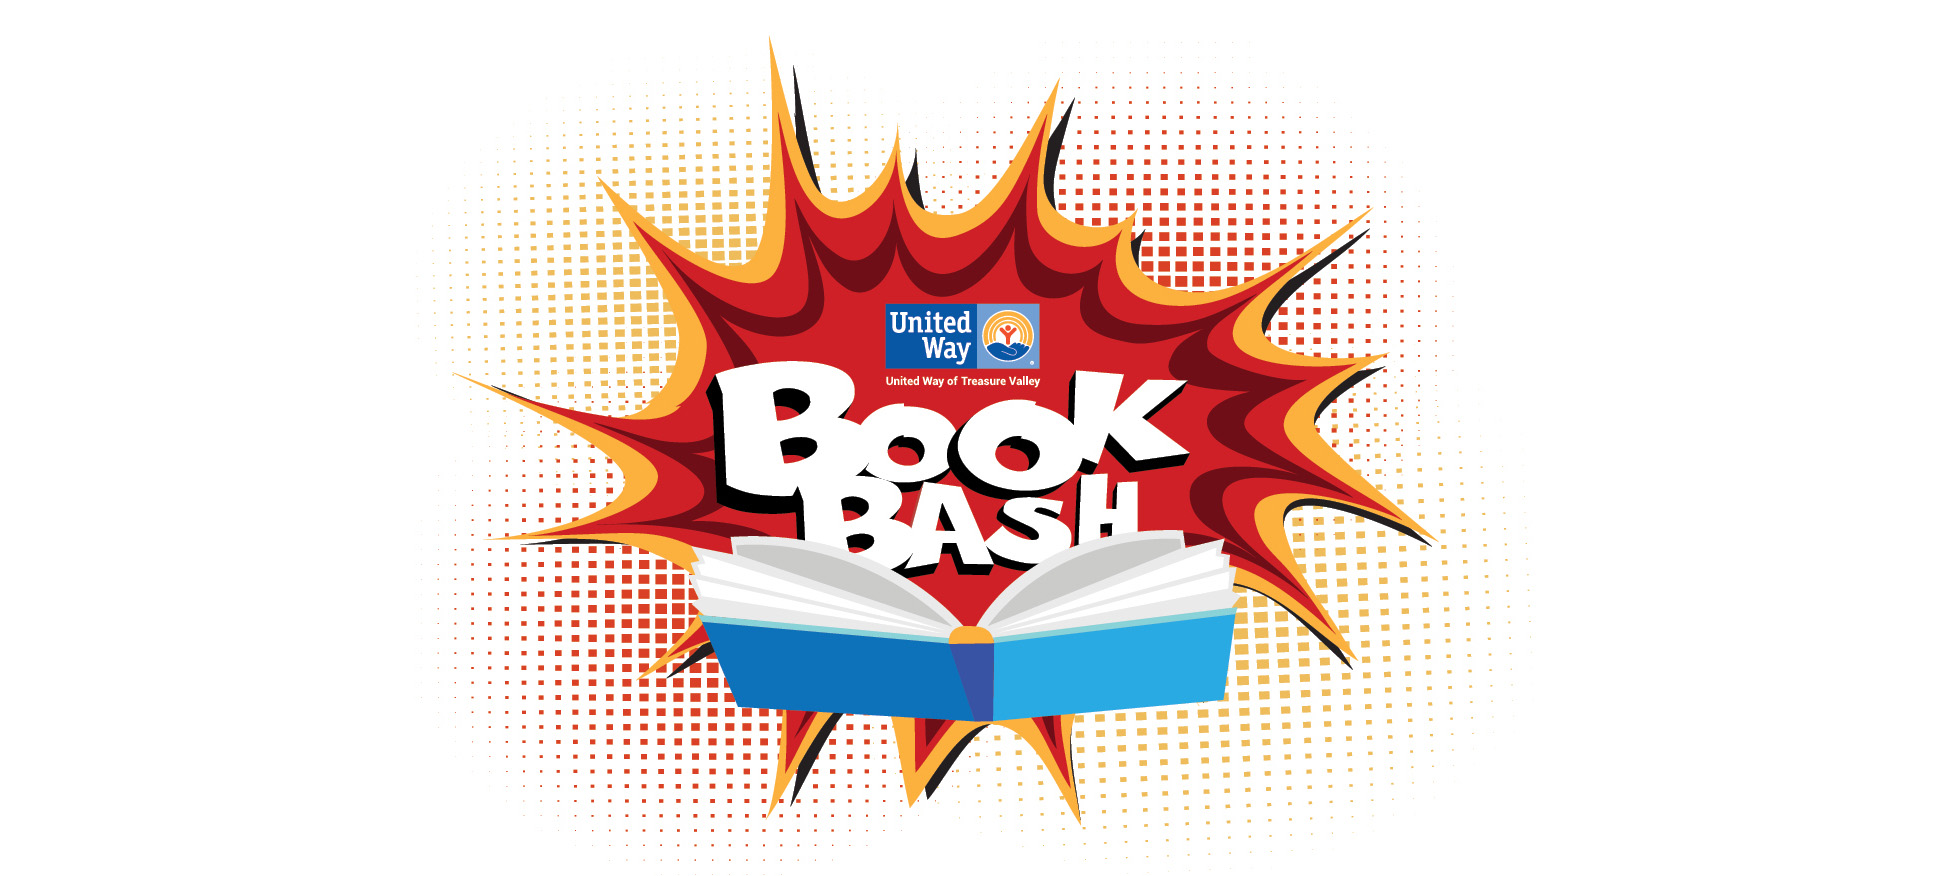 Book bash logo